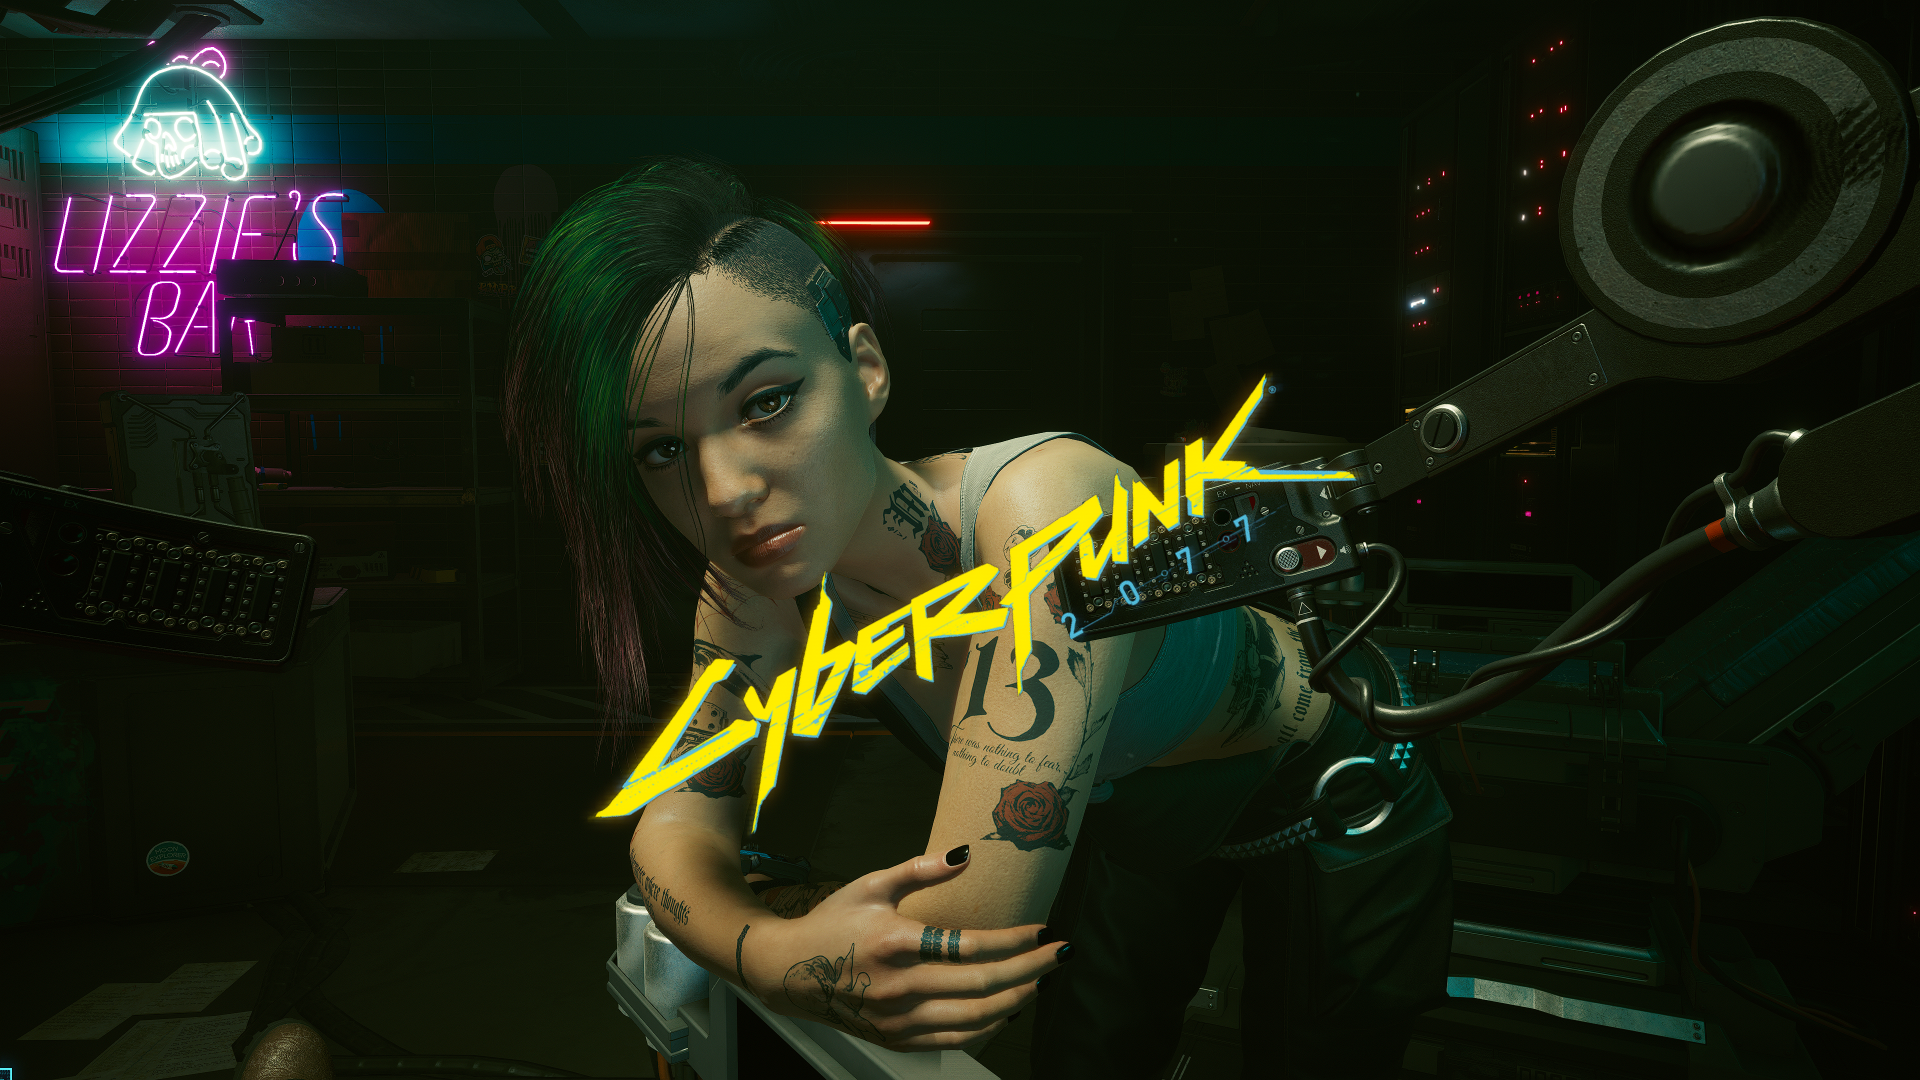 Download wallpaper: Cyberpunk 2077 gameplay 1920x1080